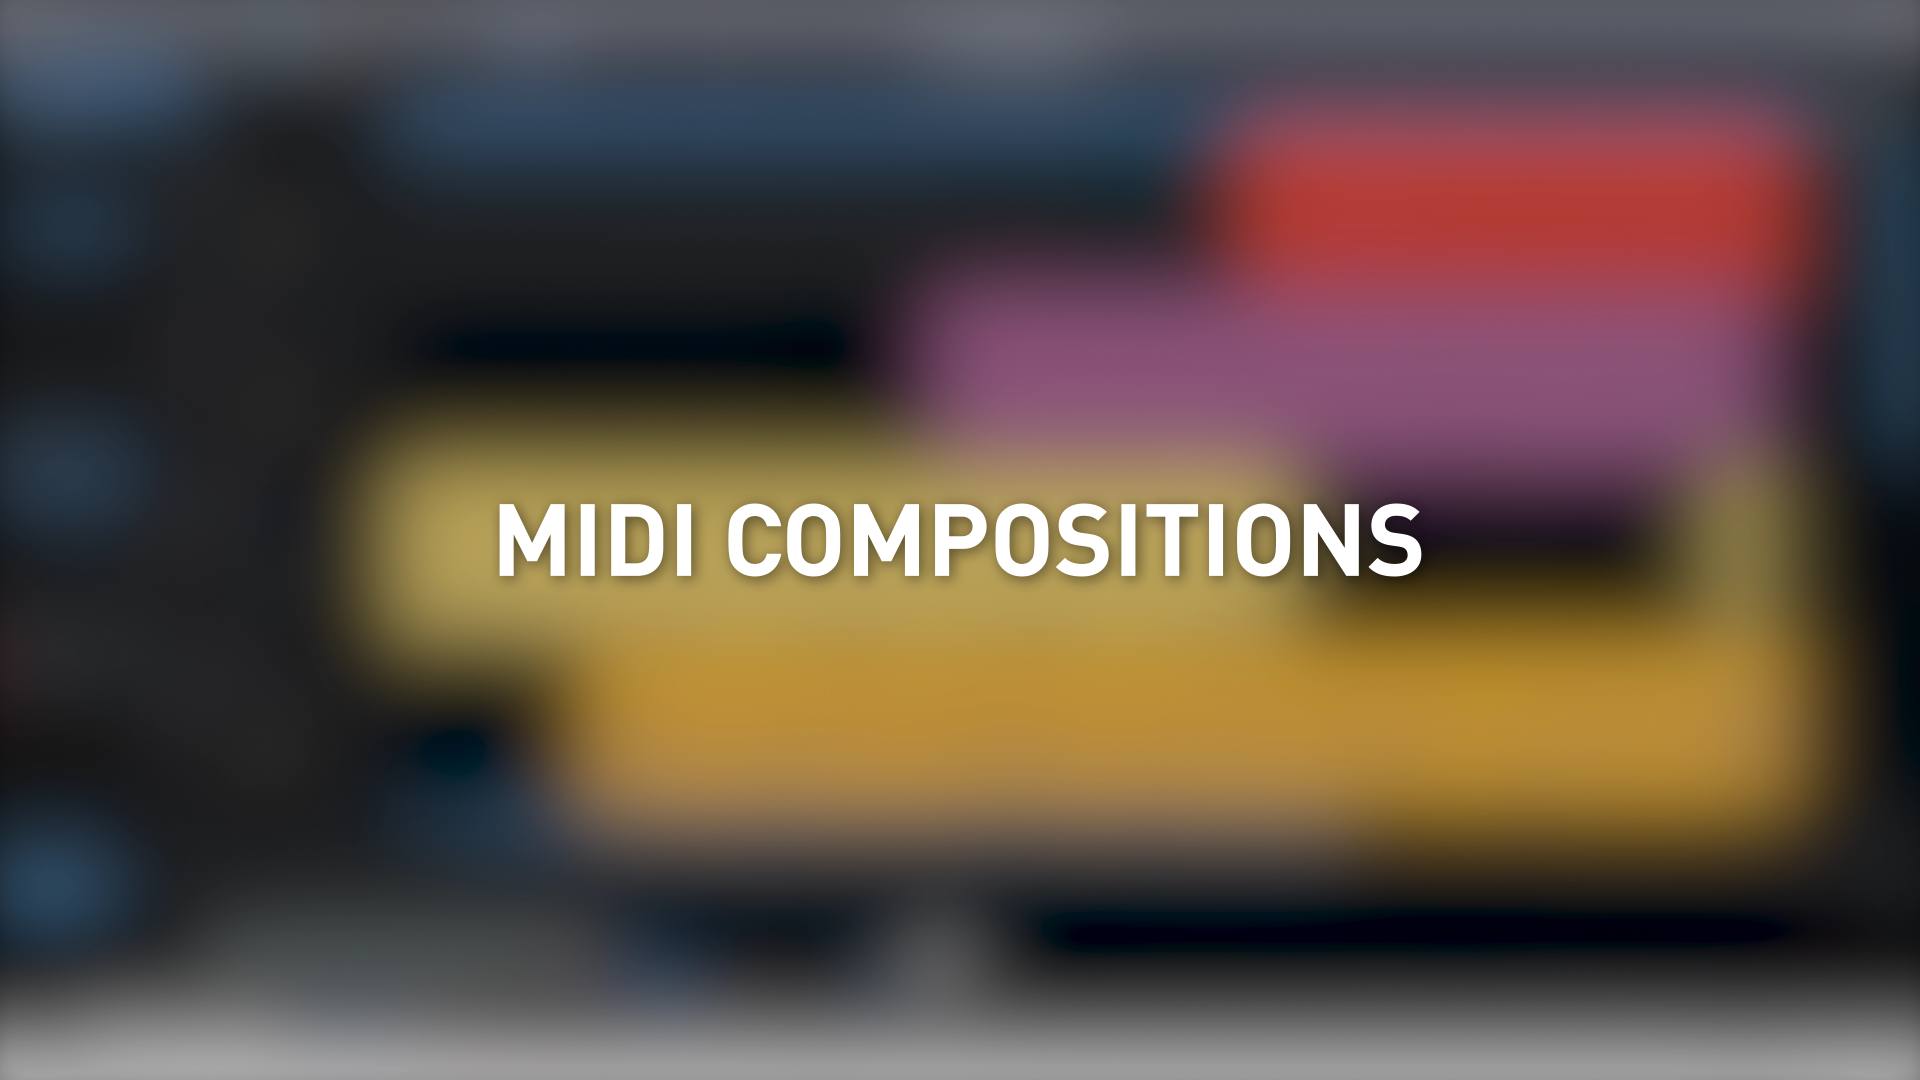 MIDI compositions